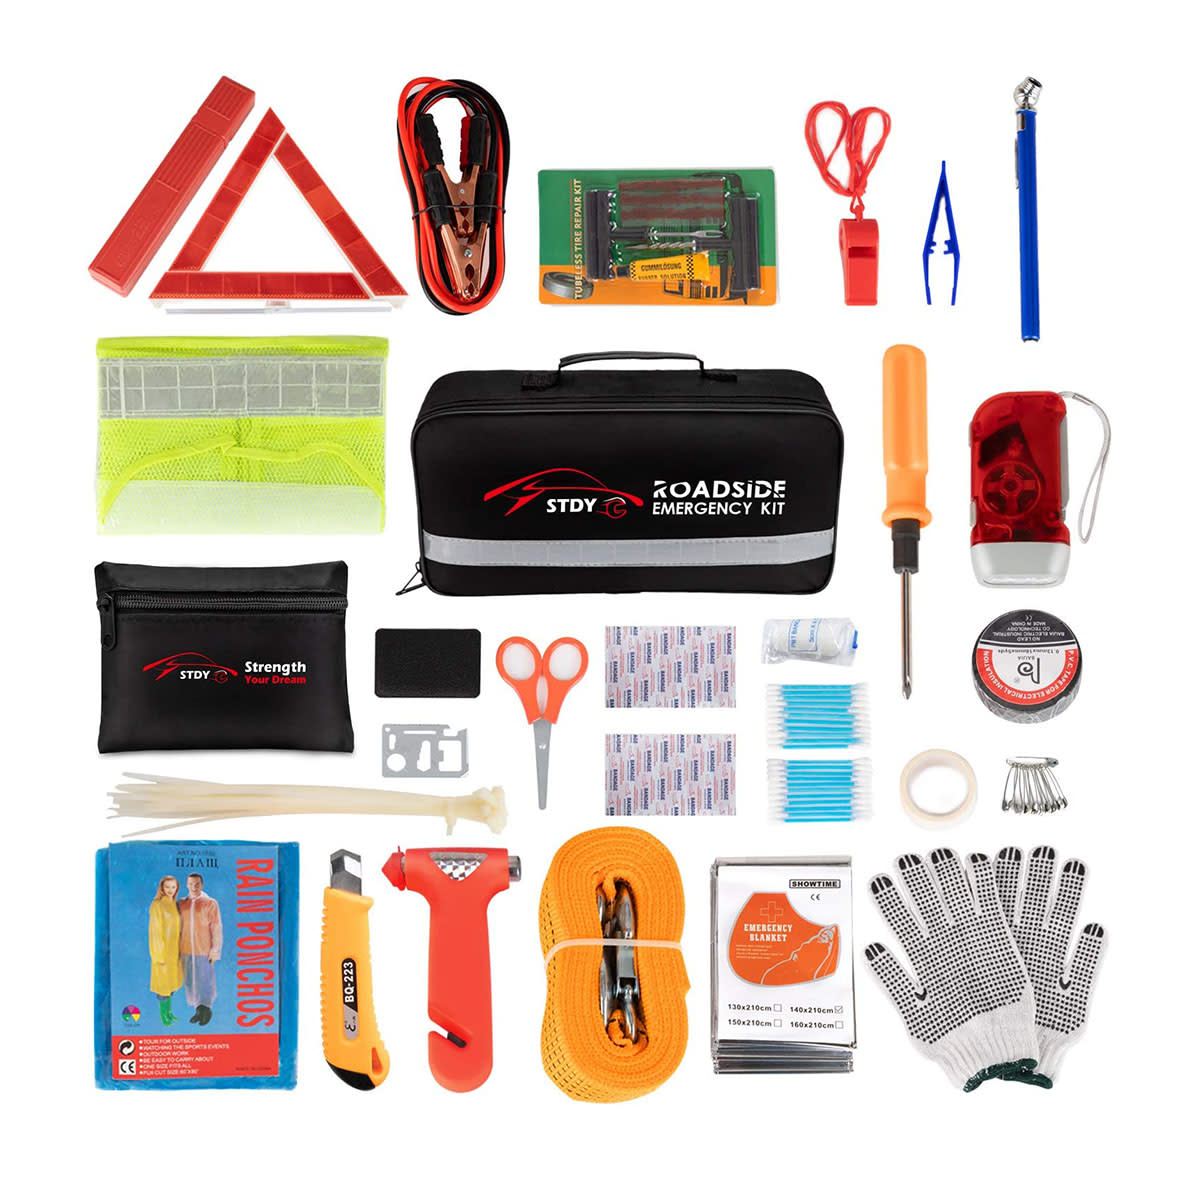 STDY Emergency Roadside Assistance Kit